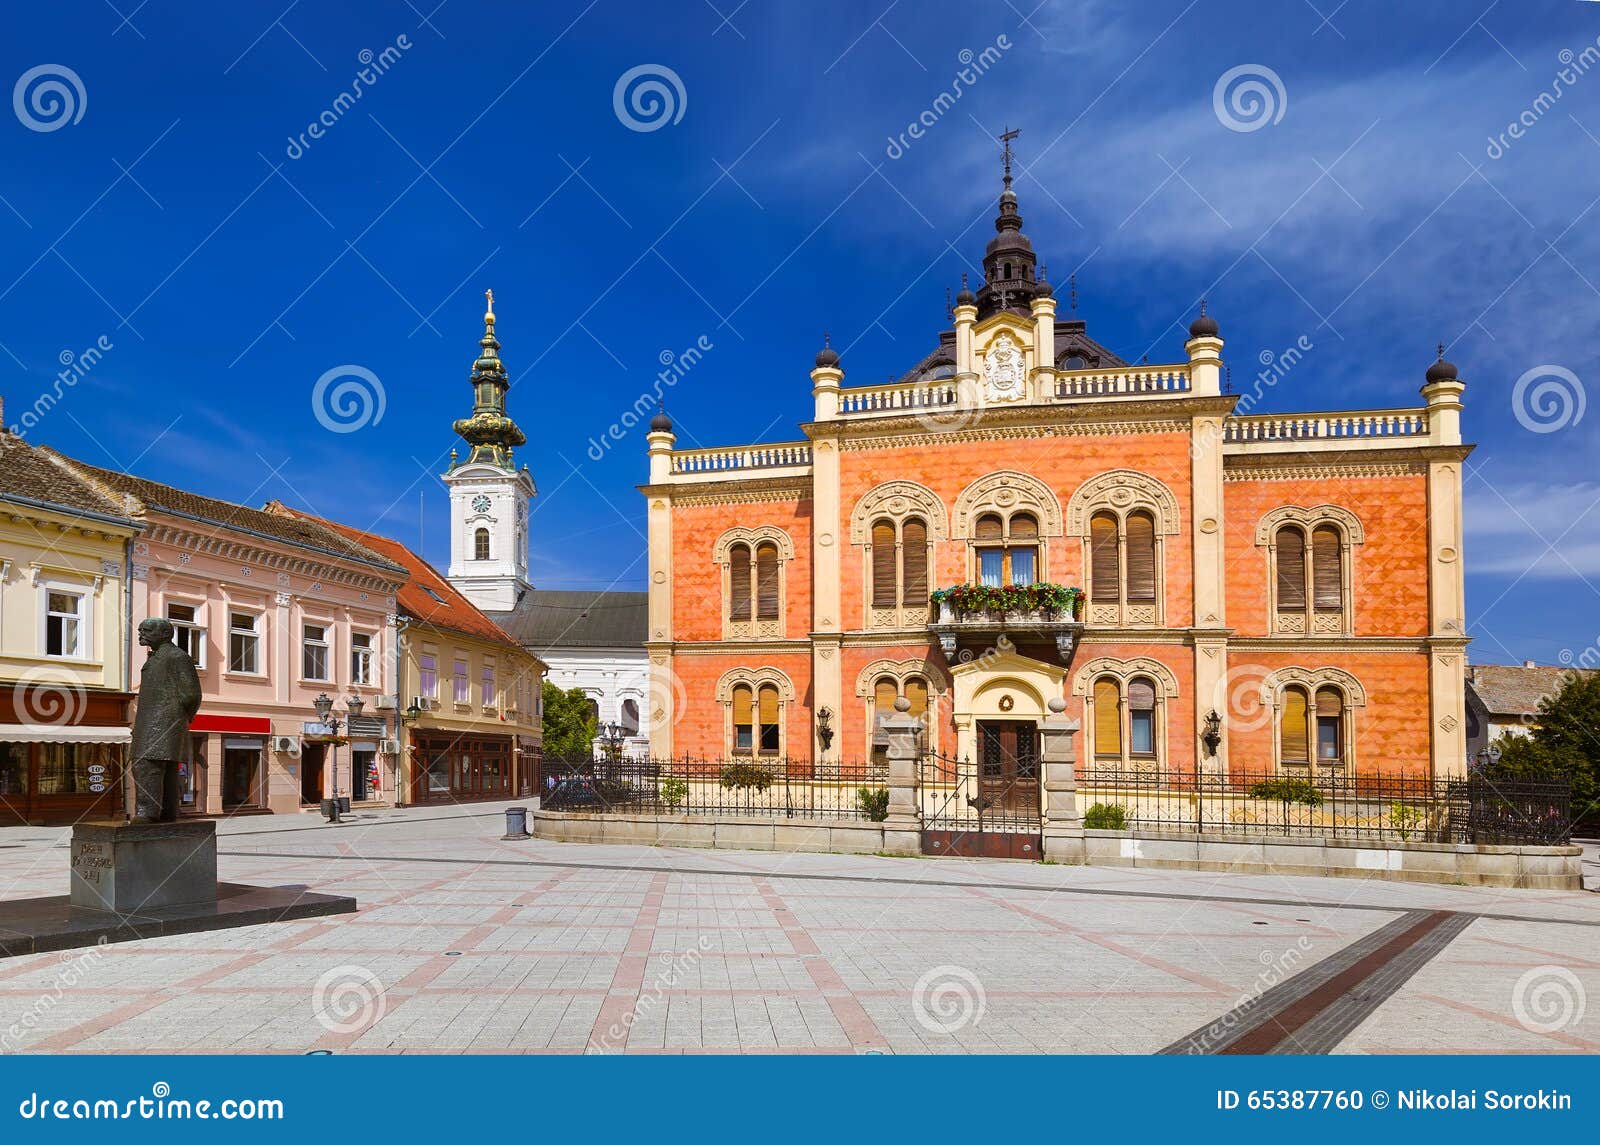 old town in novi sad - serbia